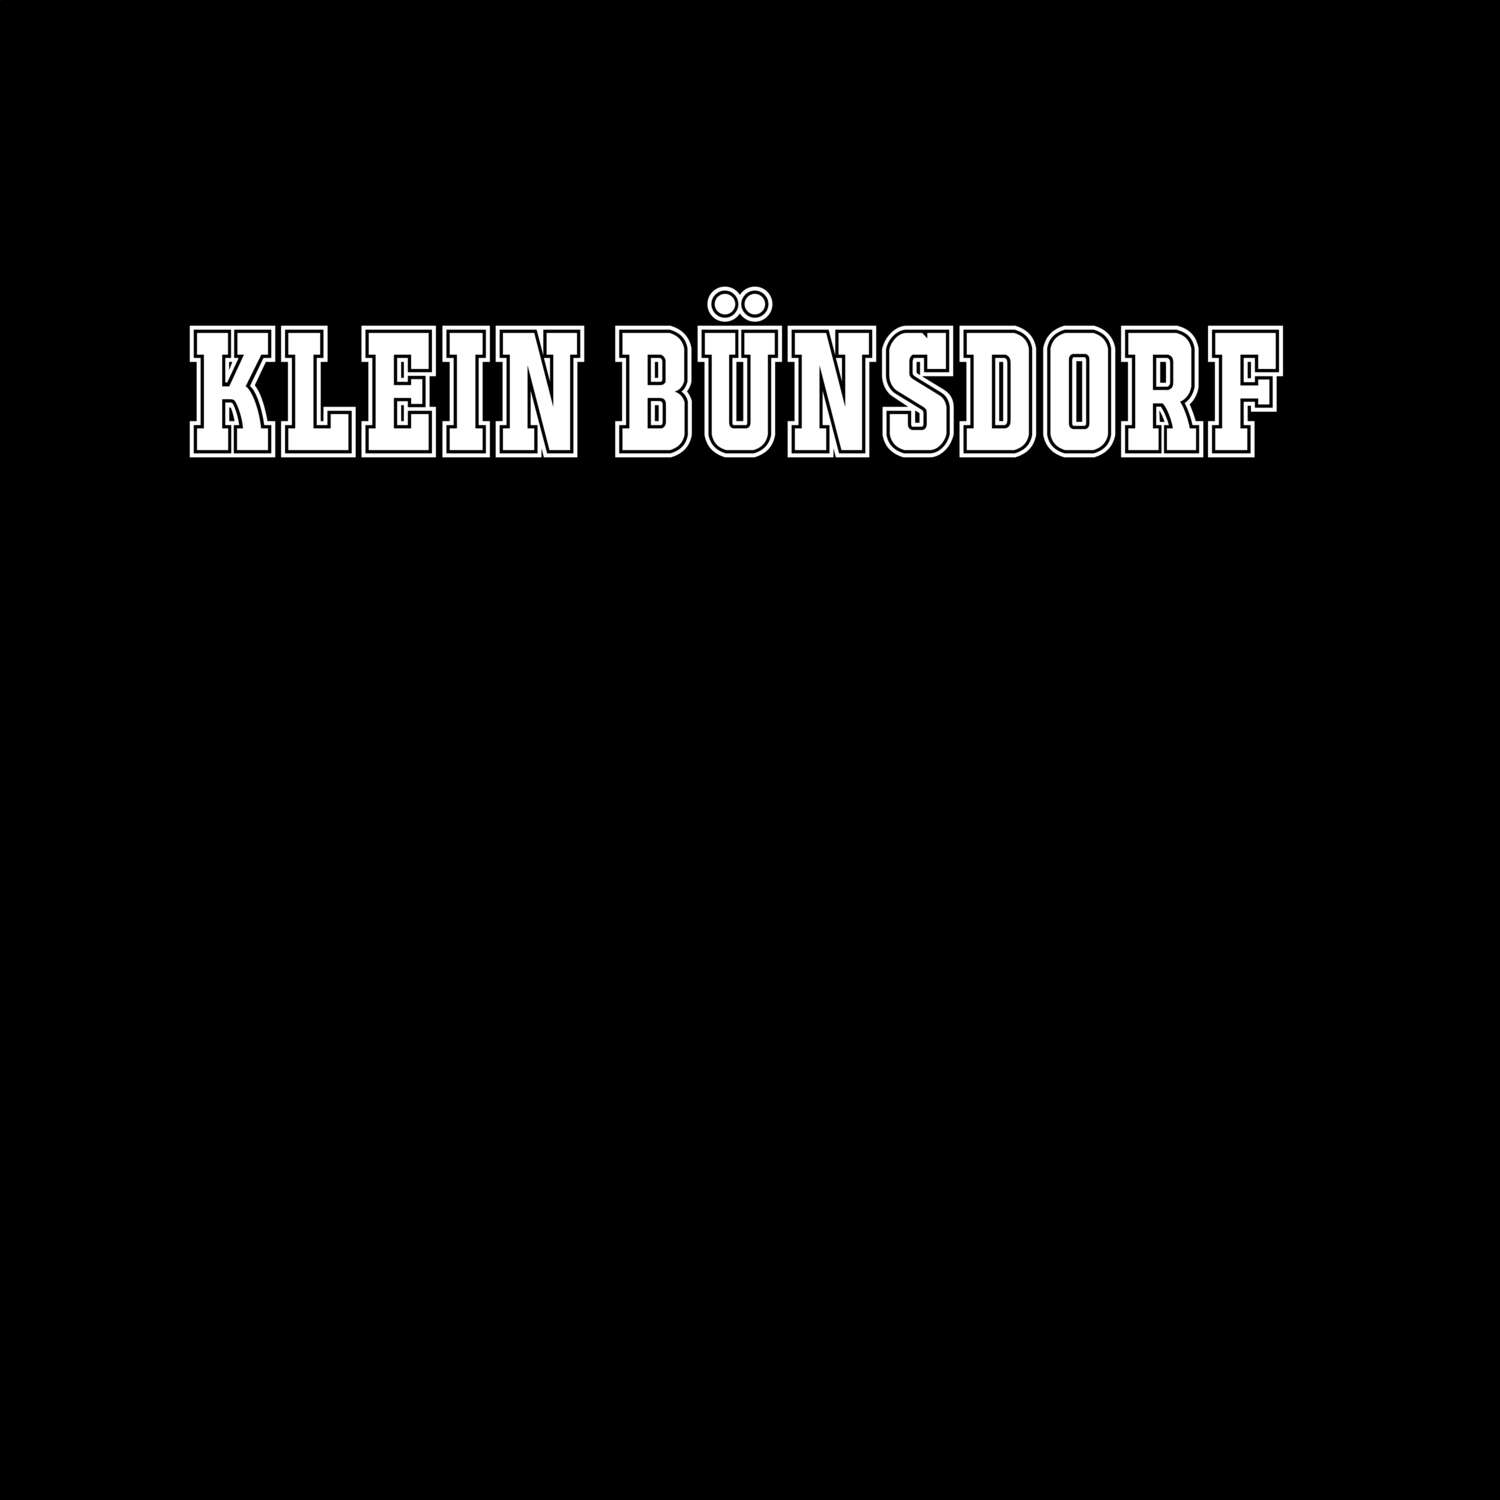 Klein Bünsdorf T-Shirt »Classic«